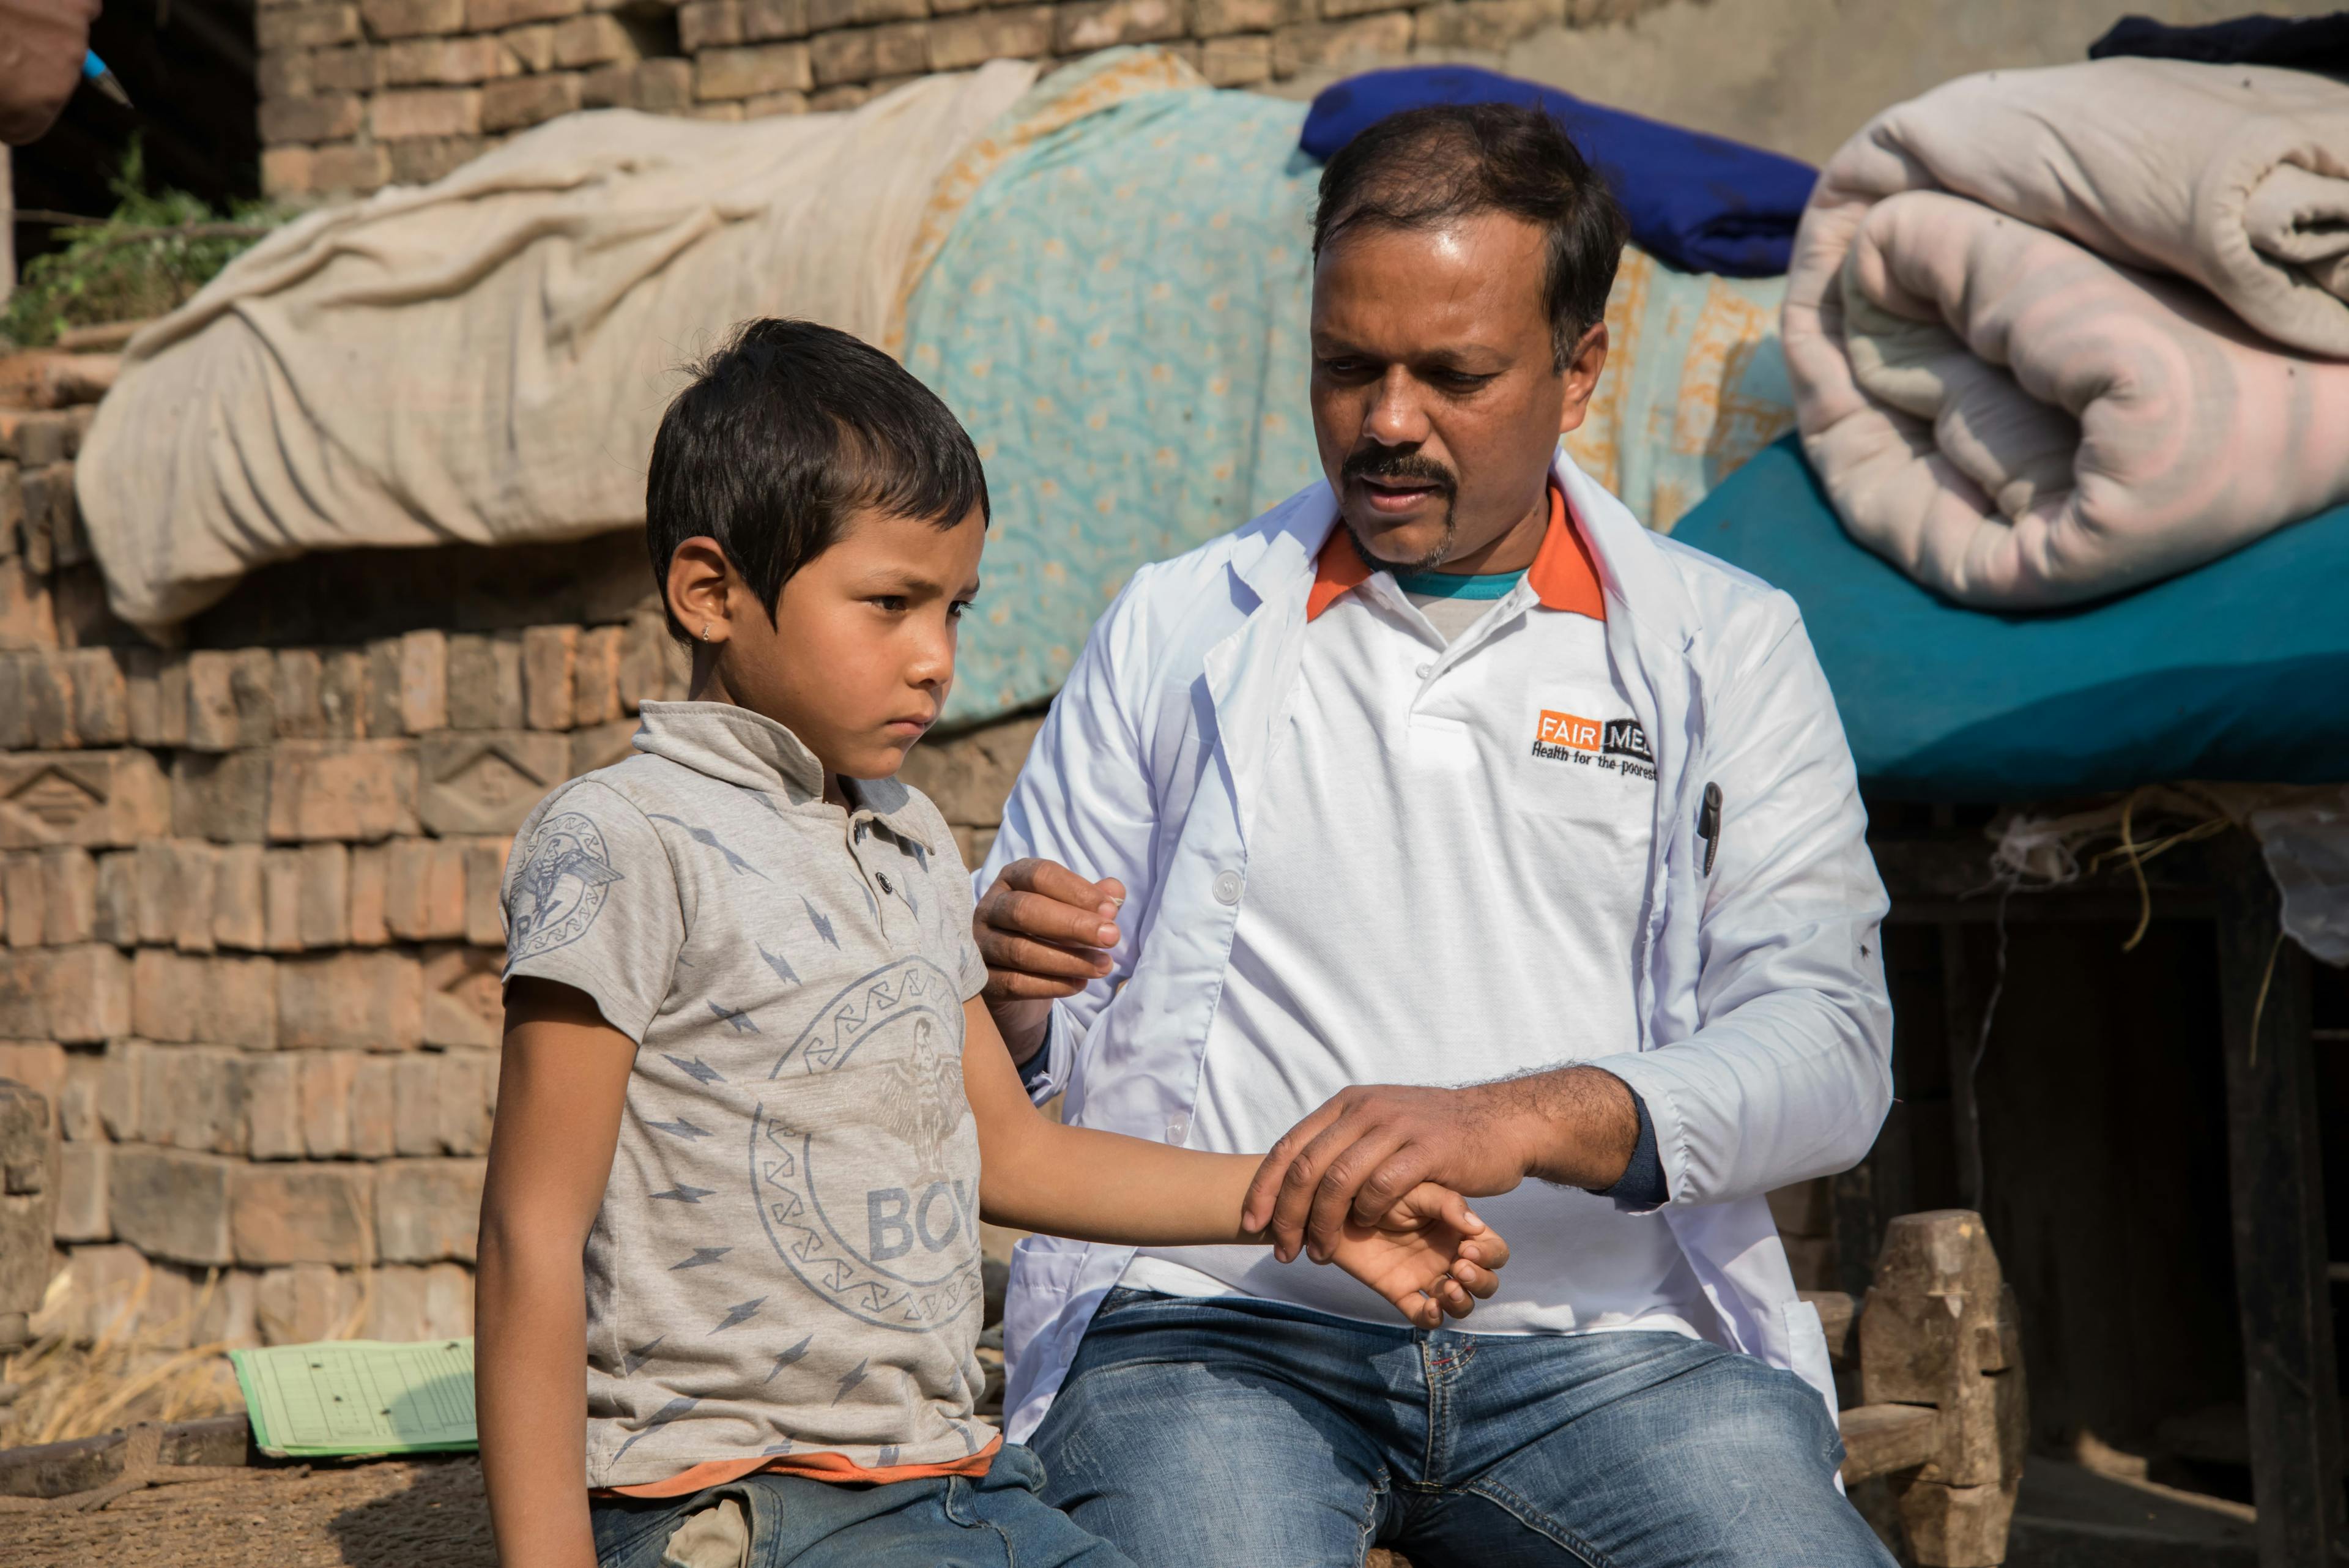 Un collaborateur de FAIRMED examine un enfant en Inde. Ils sont assis ensemble sur un mur et le collaborateur de FAIRMED examine le bras du garçon.